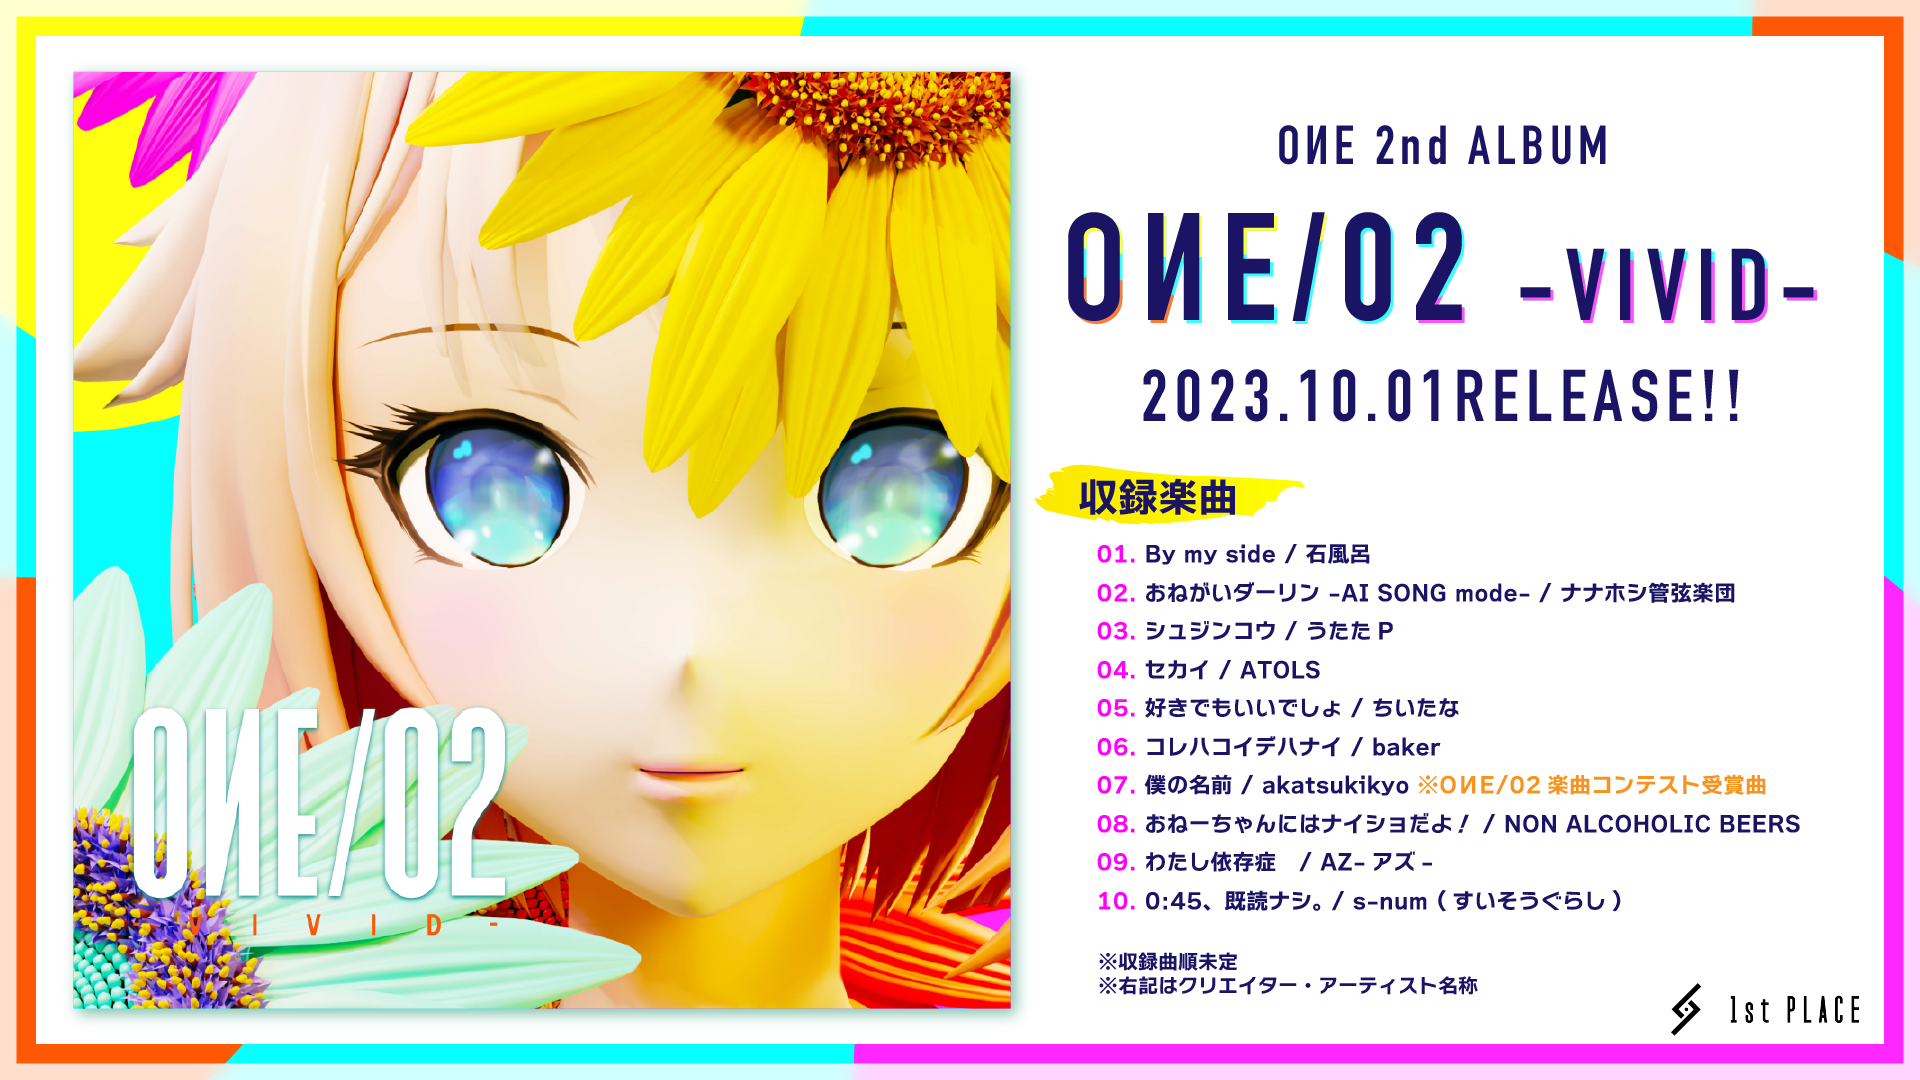 【RELEASE INFO】約5年半ぶりとなる待望の2nd ALBUM『OИE/02 -VIVID-』のデジタルリリースが決定!!